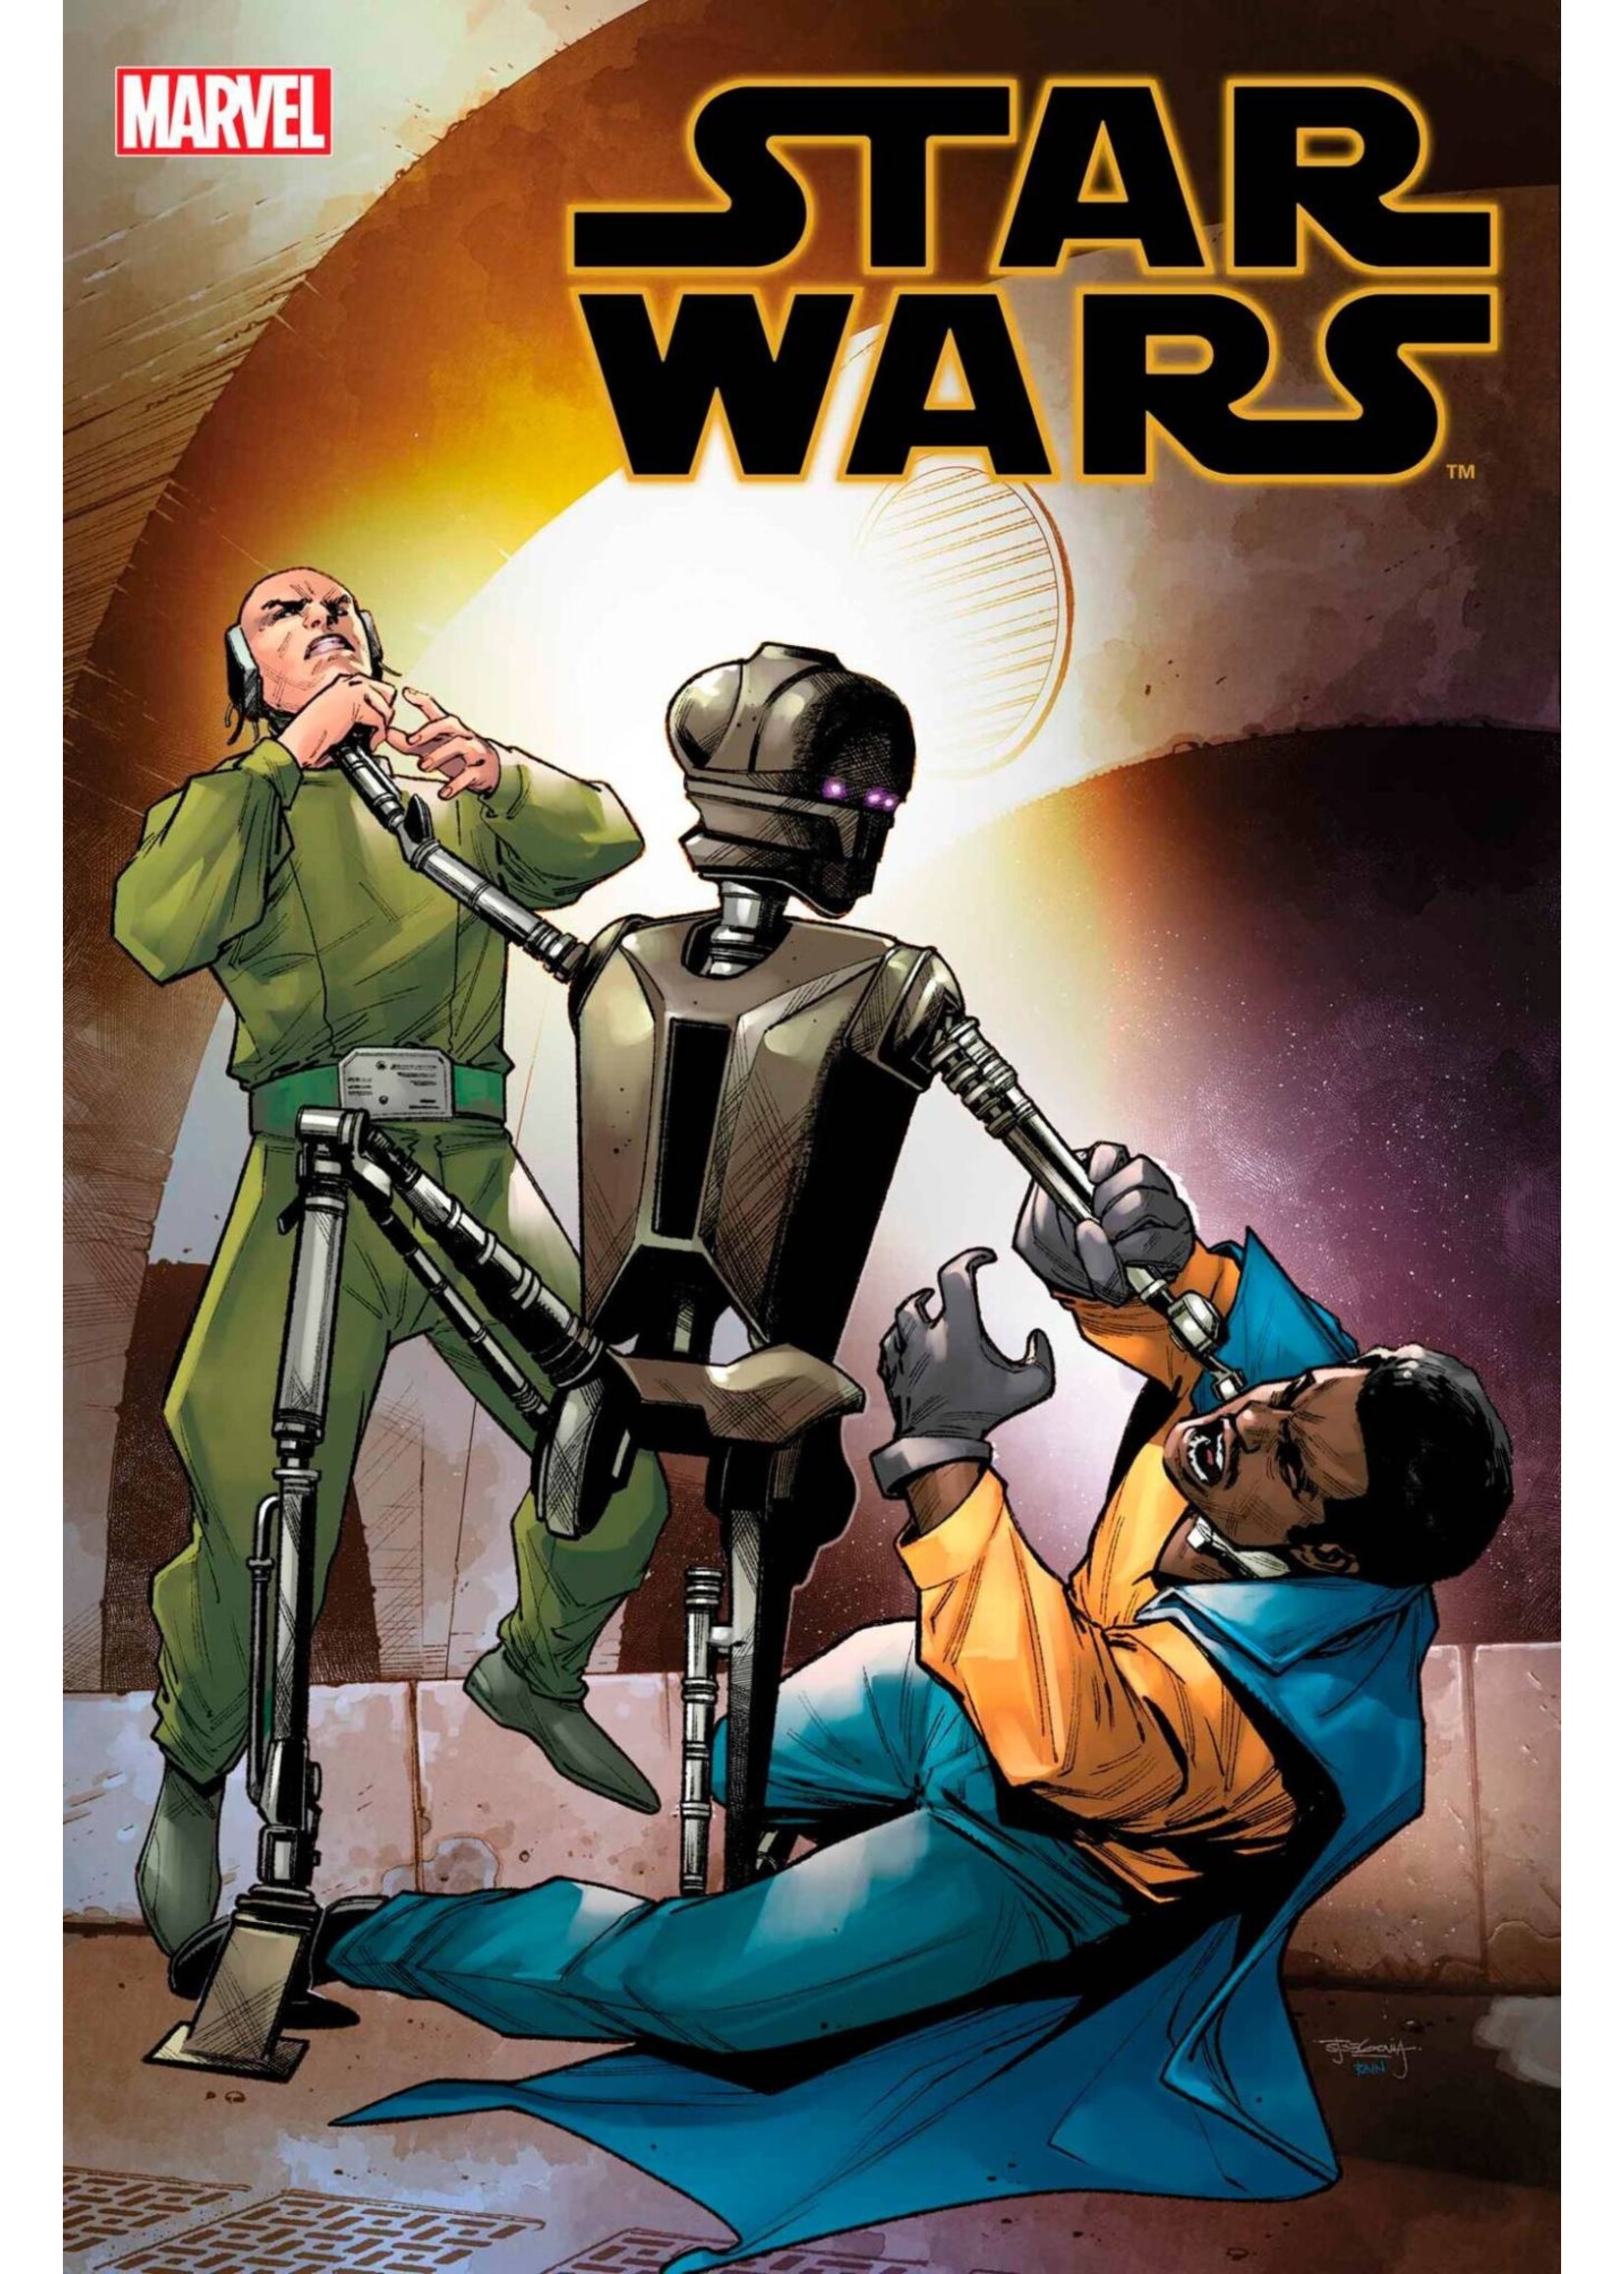 MARVEL COMICS STAR WARS #38